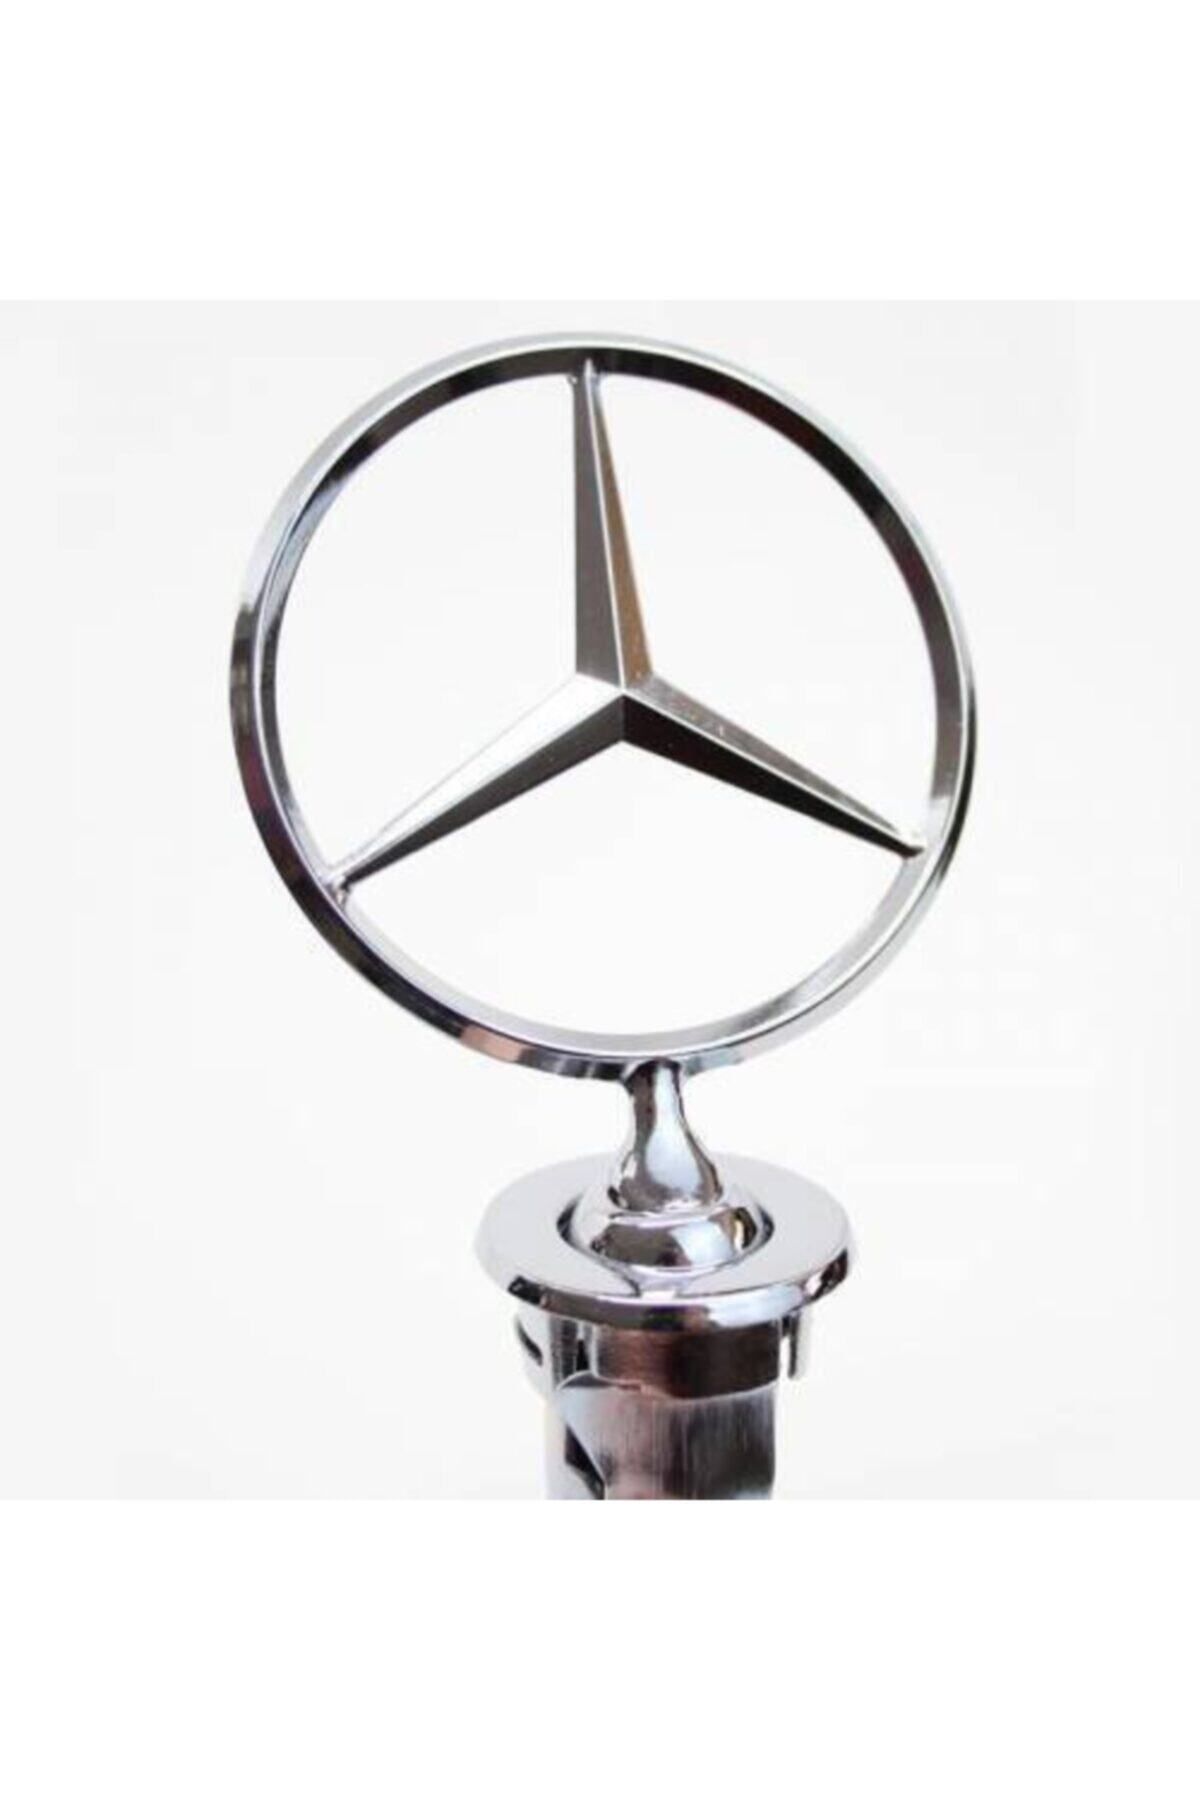 Mercedes Kaput Yıldızı W123 Kasa--200-280-200d-300d--240td-250t-280 E+ce+te-300td- 1975-1986 Model